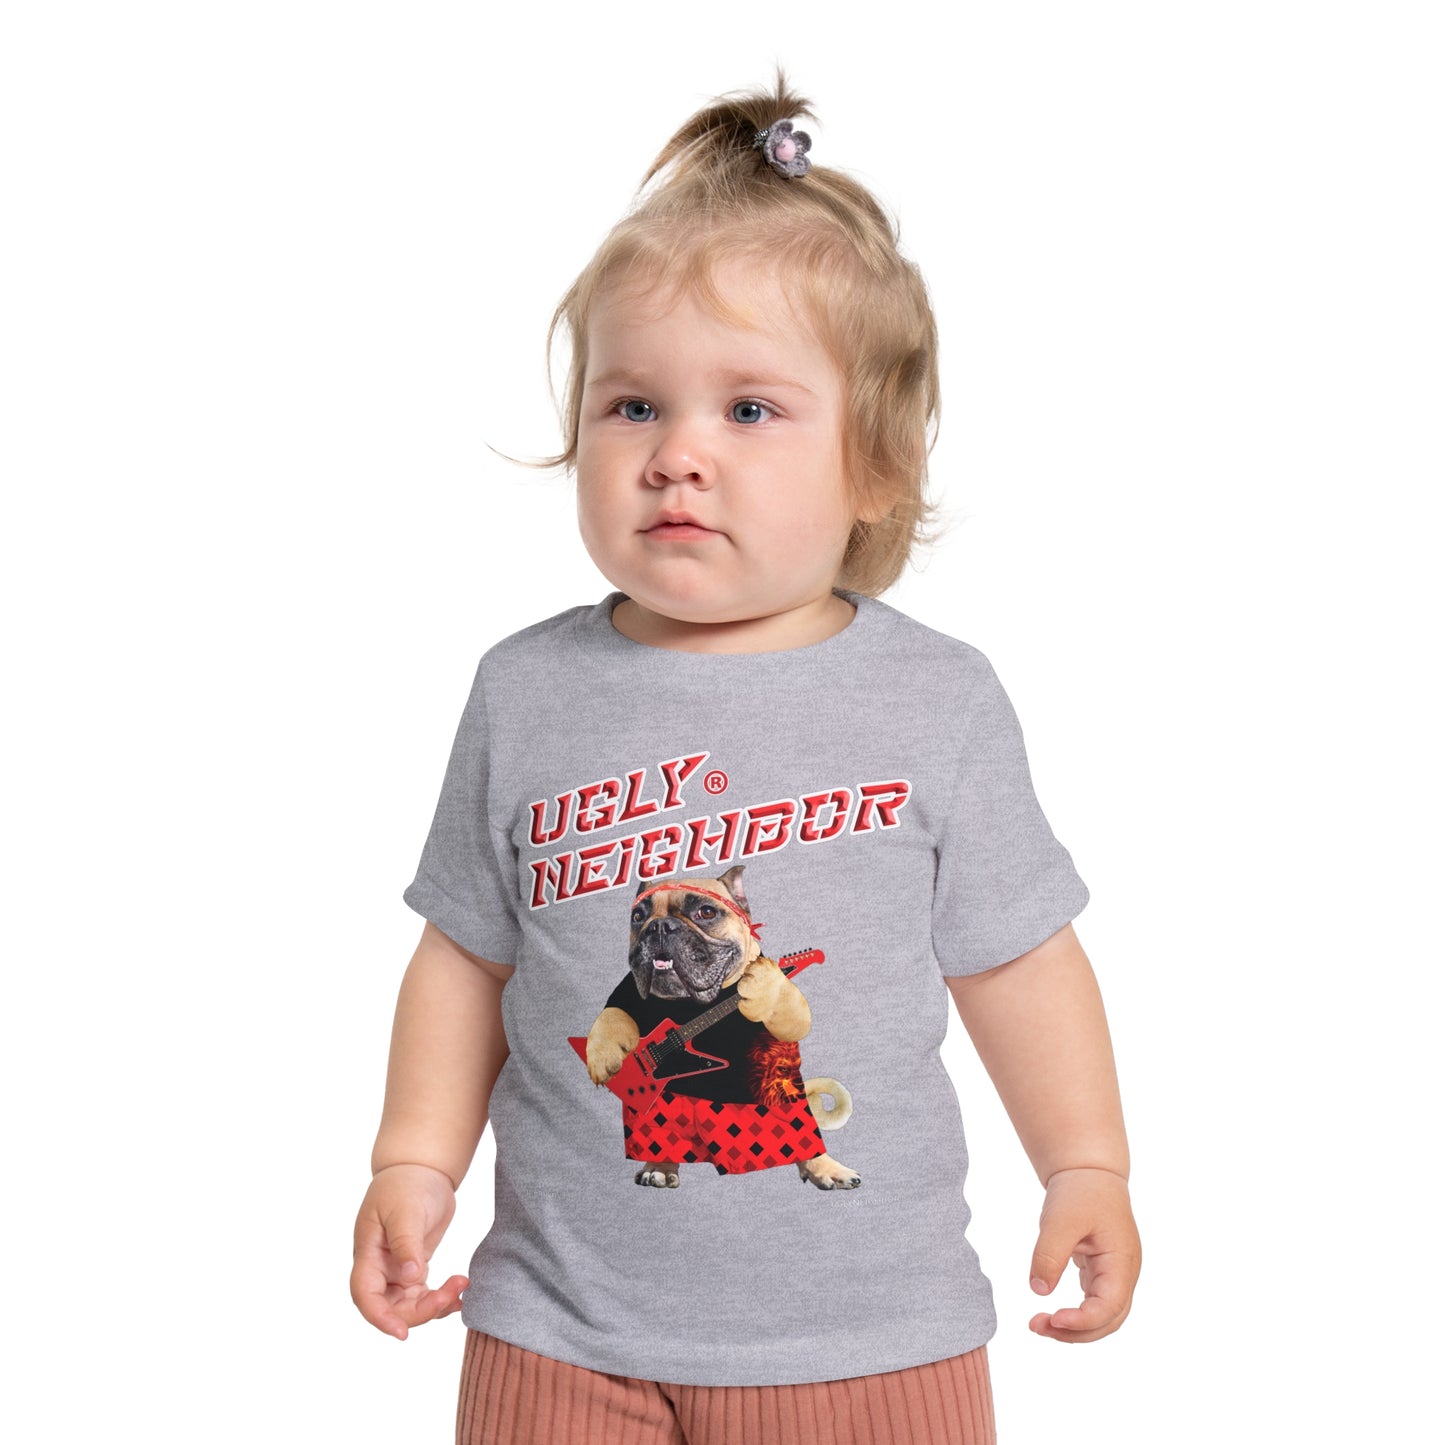 Ugly Neighbor II Baby Short Sleeve T-Shirt